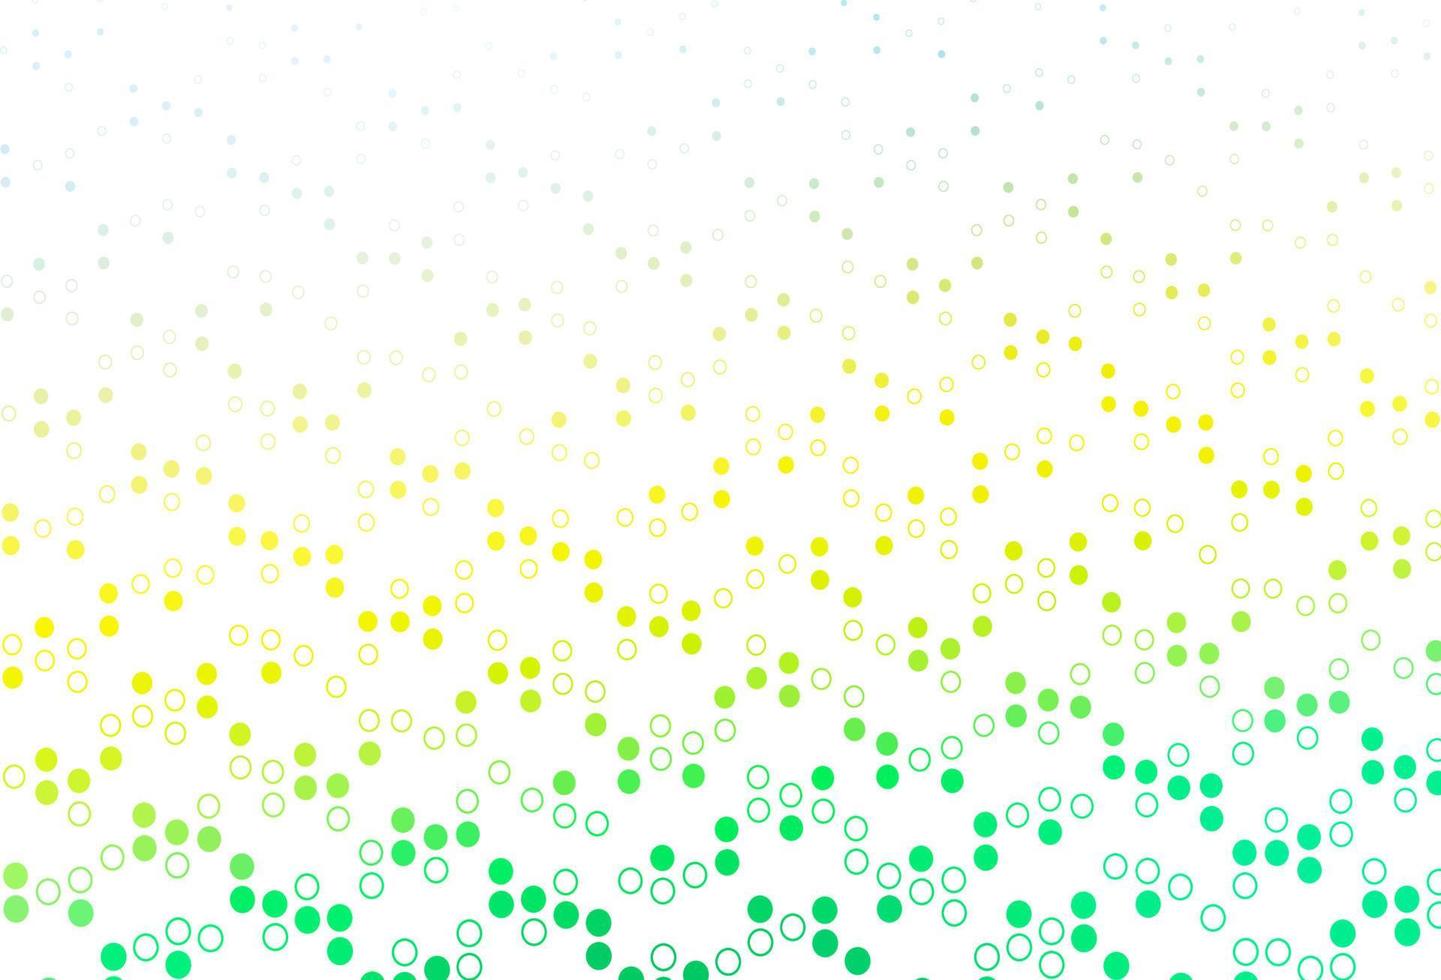 ljusgrön, gul vektorlayout med cirkelformer. vektor